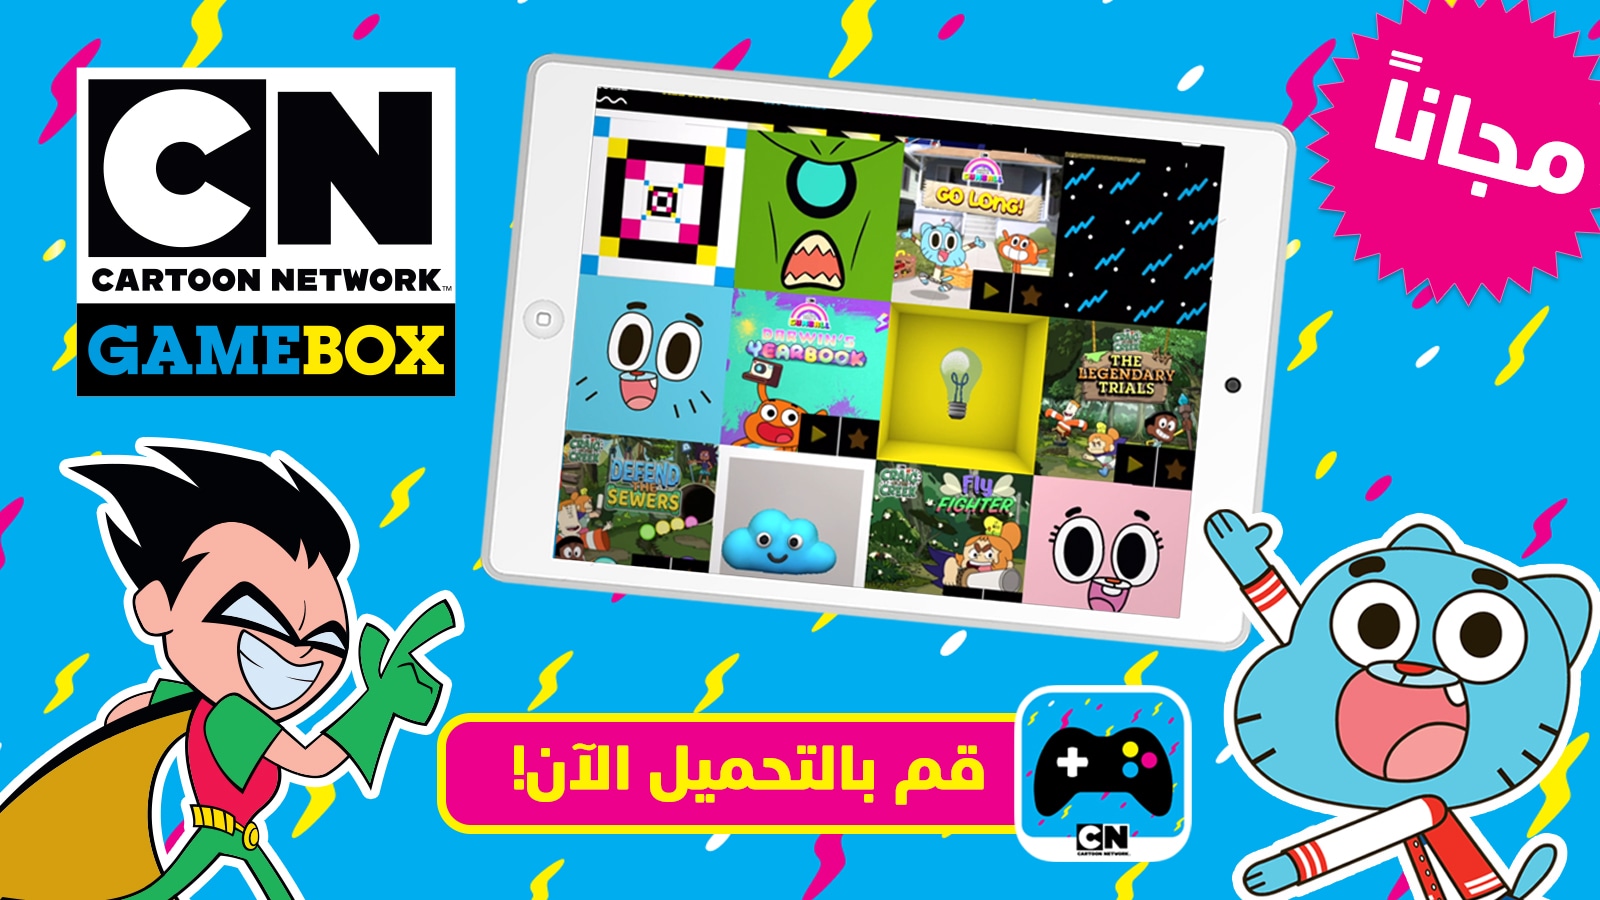 العاب cn cartoon network بالعربية